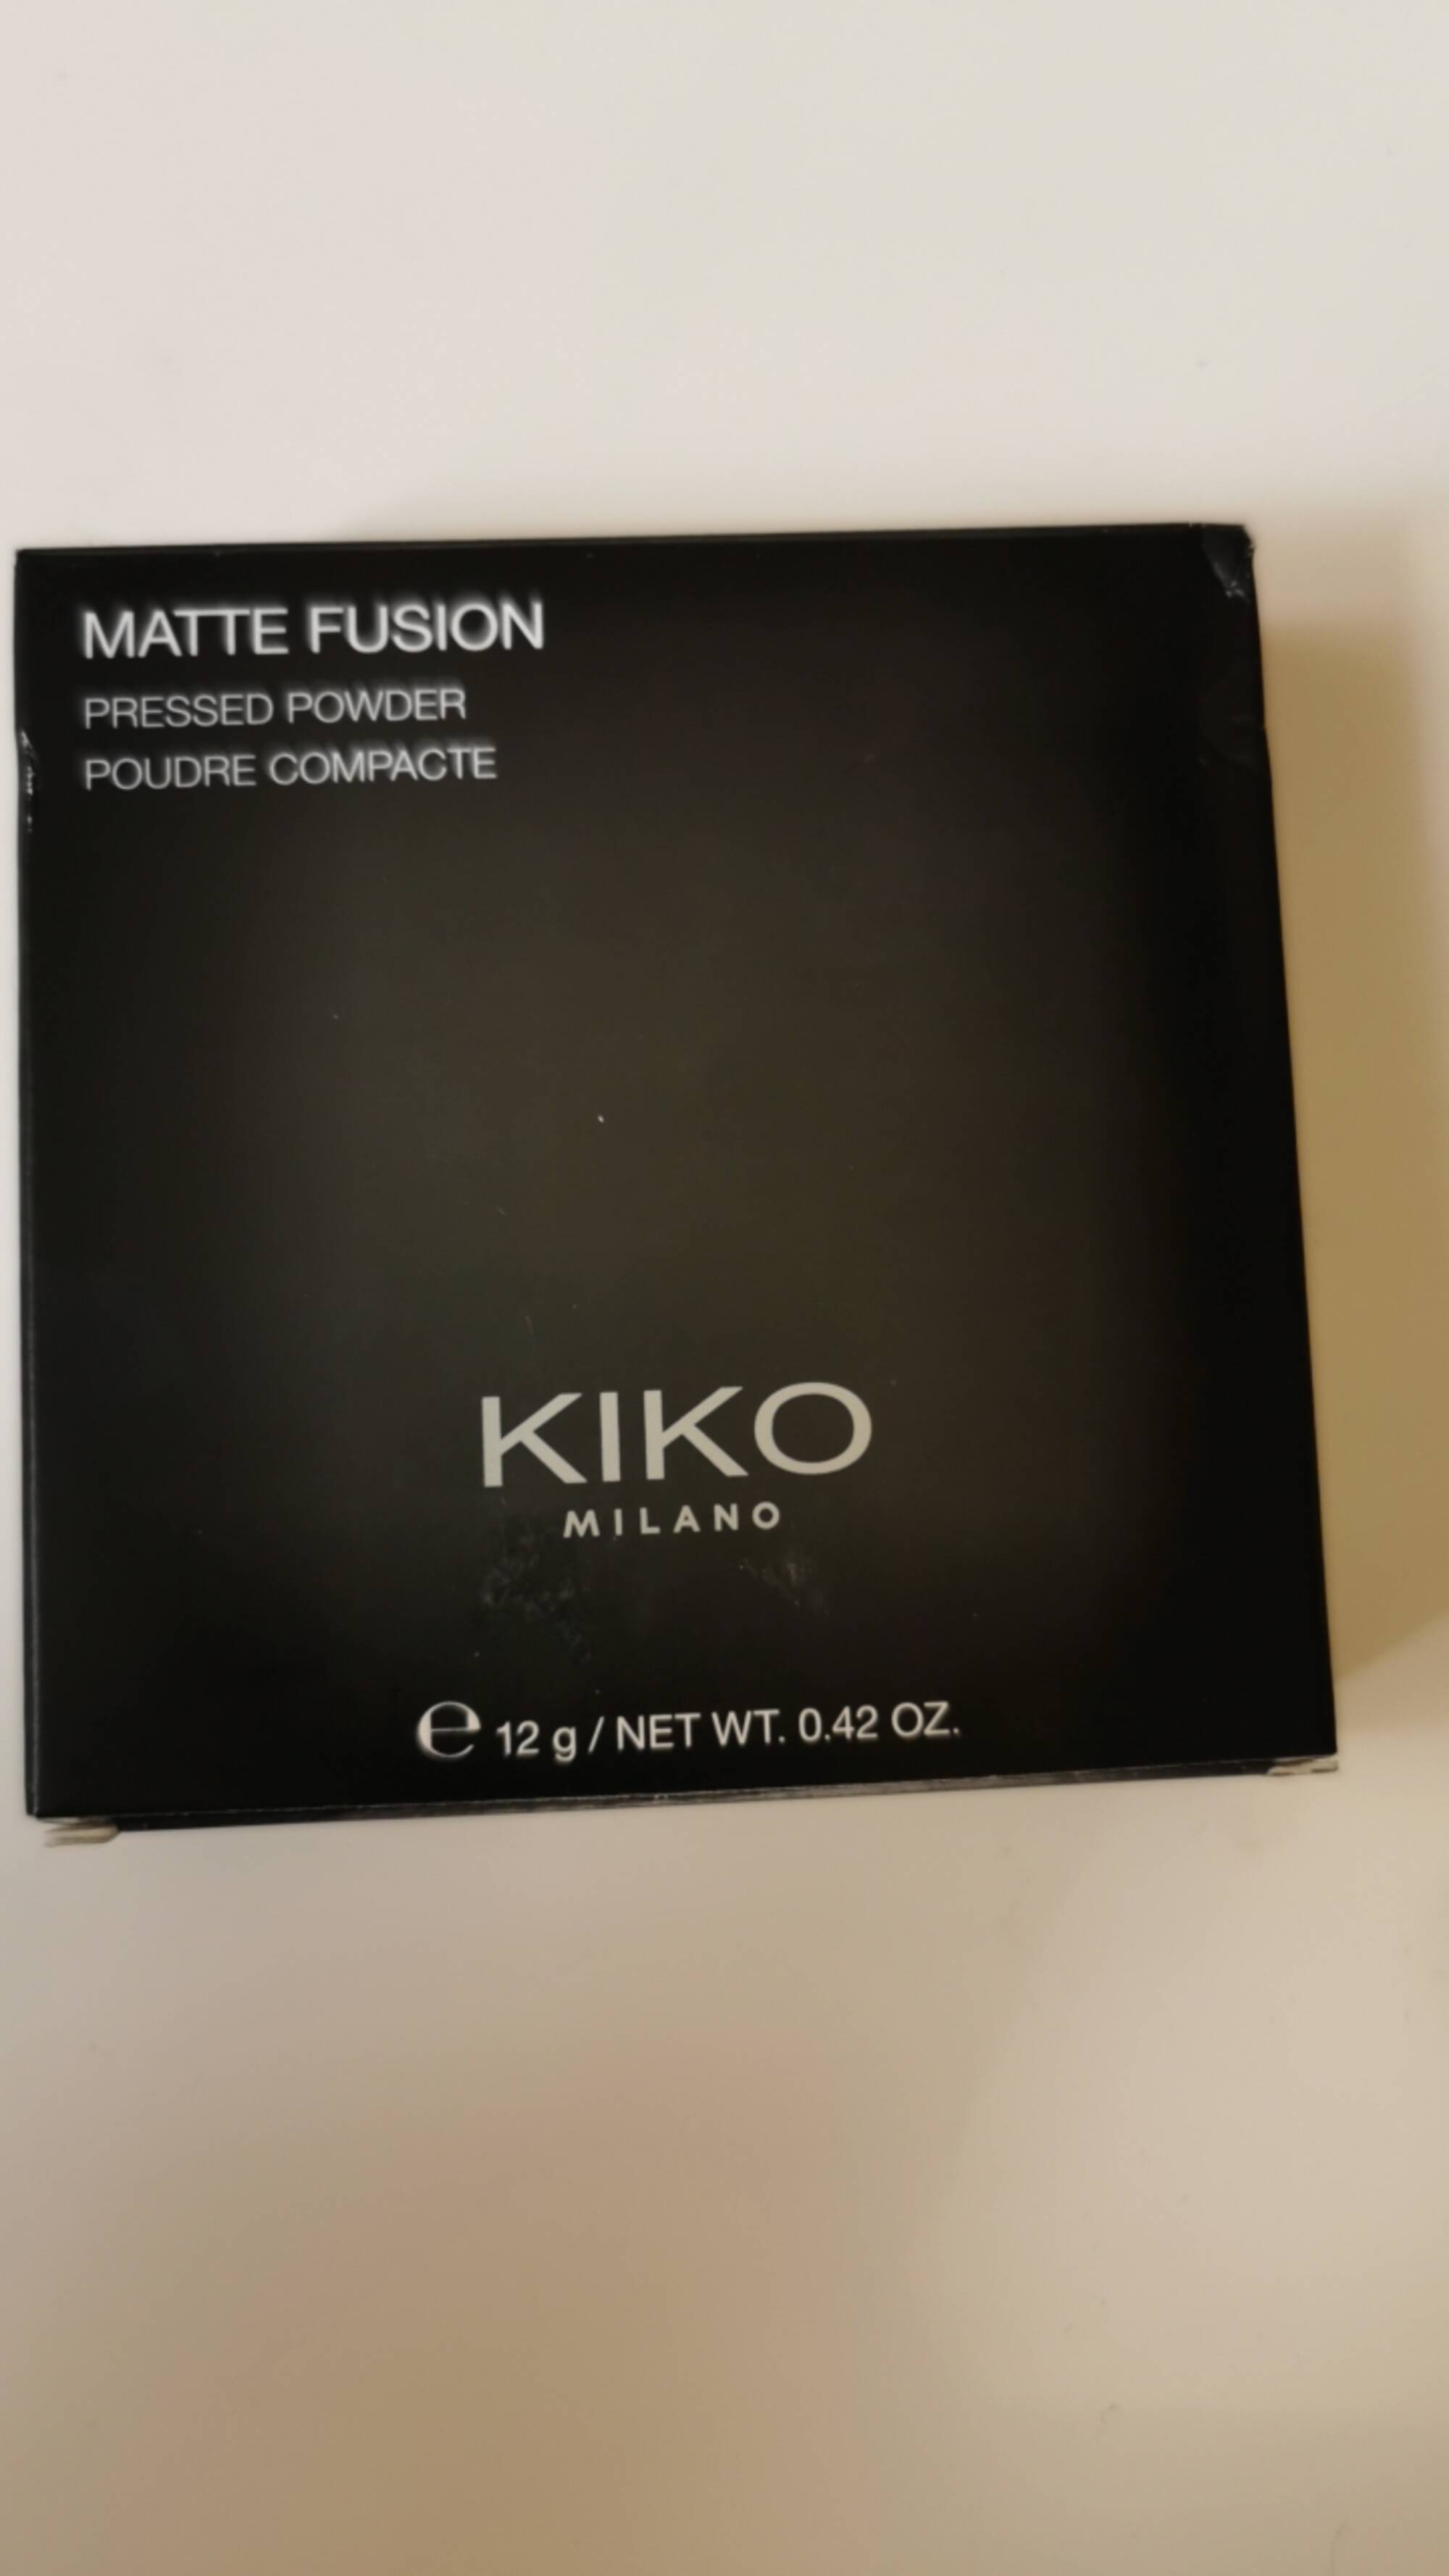 KIKO - Matte fusion - Poudre compacte 07